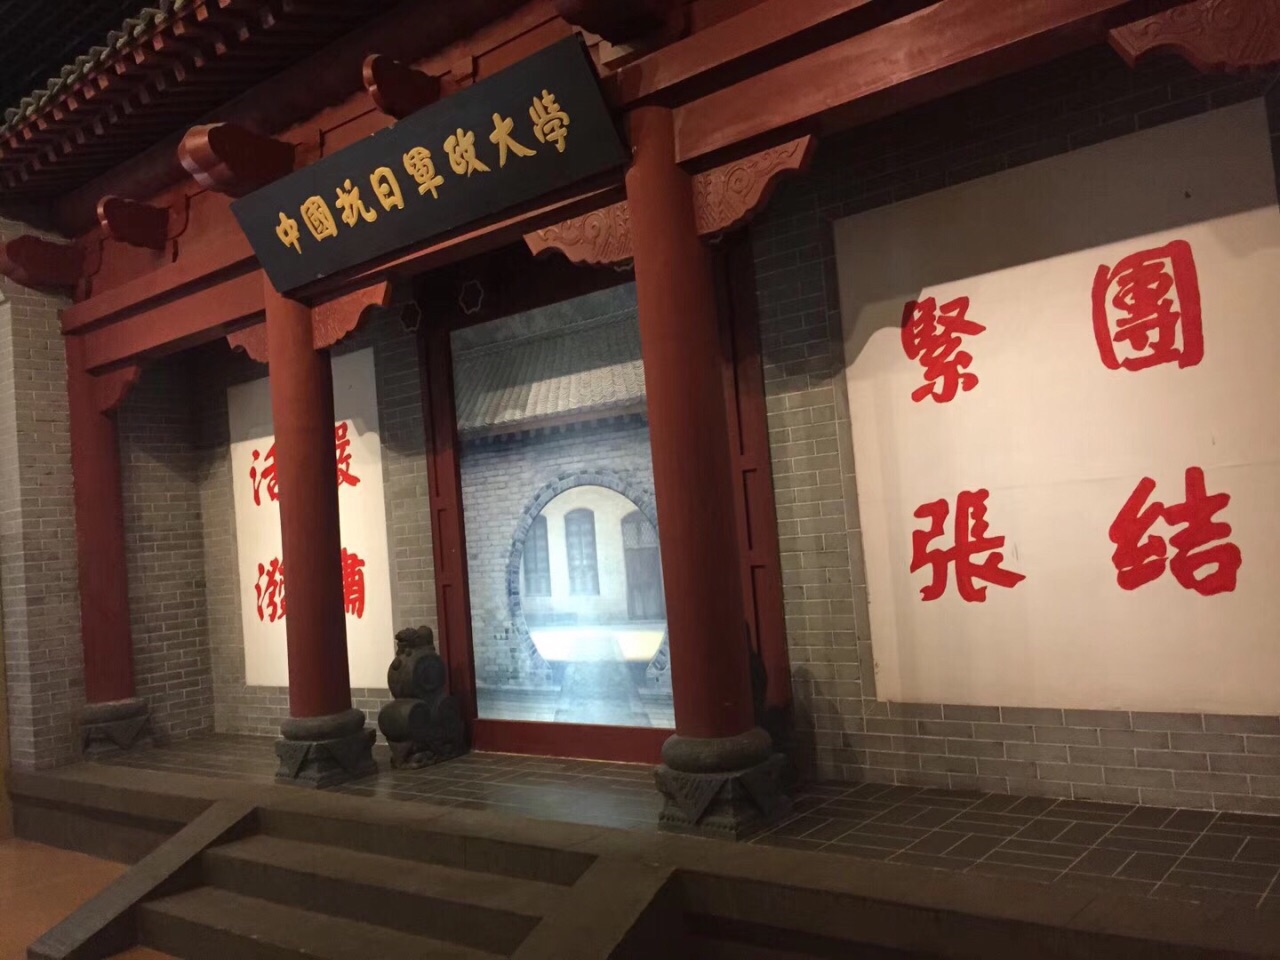 【携程攻略】重庆红岩革命纪念馆景点,重庆革命历史的博物馆，介绍详细、图文并茂，整三层楼，上山坡台阶好…